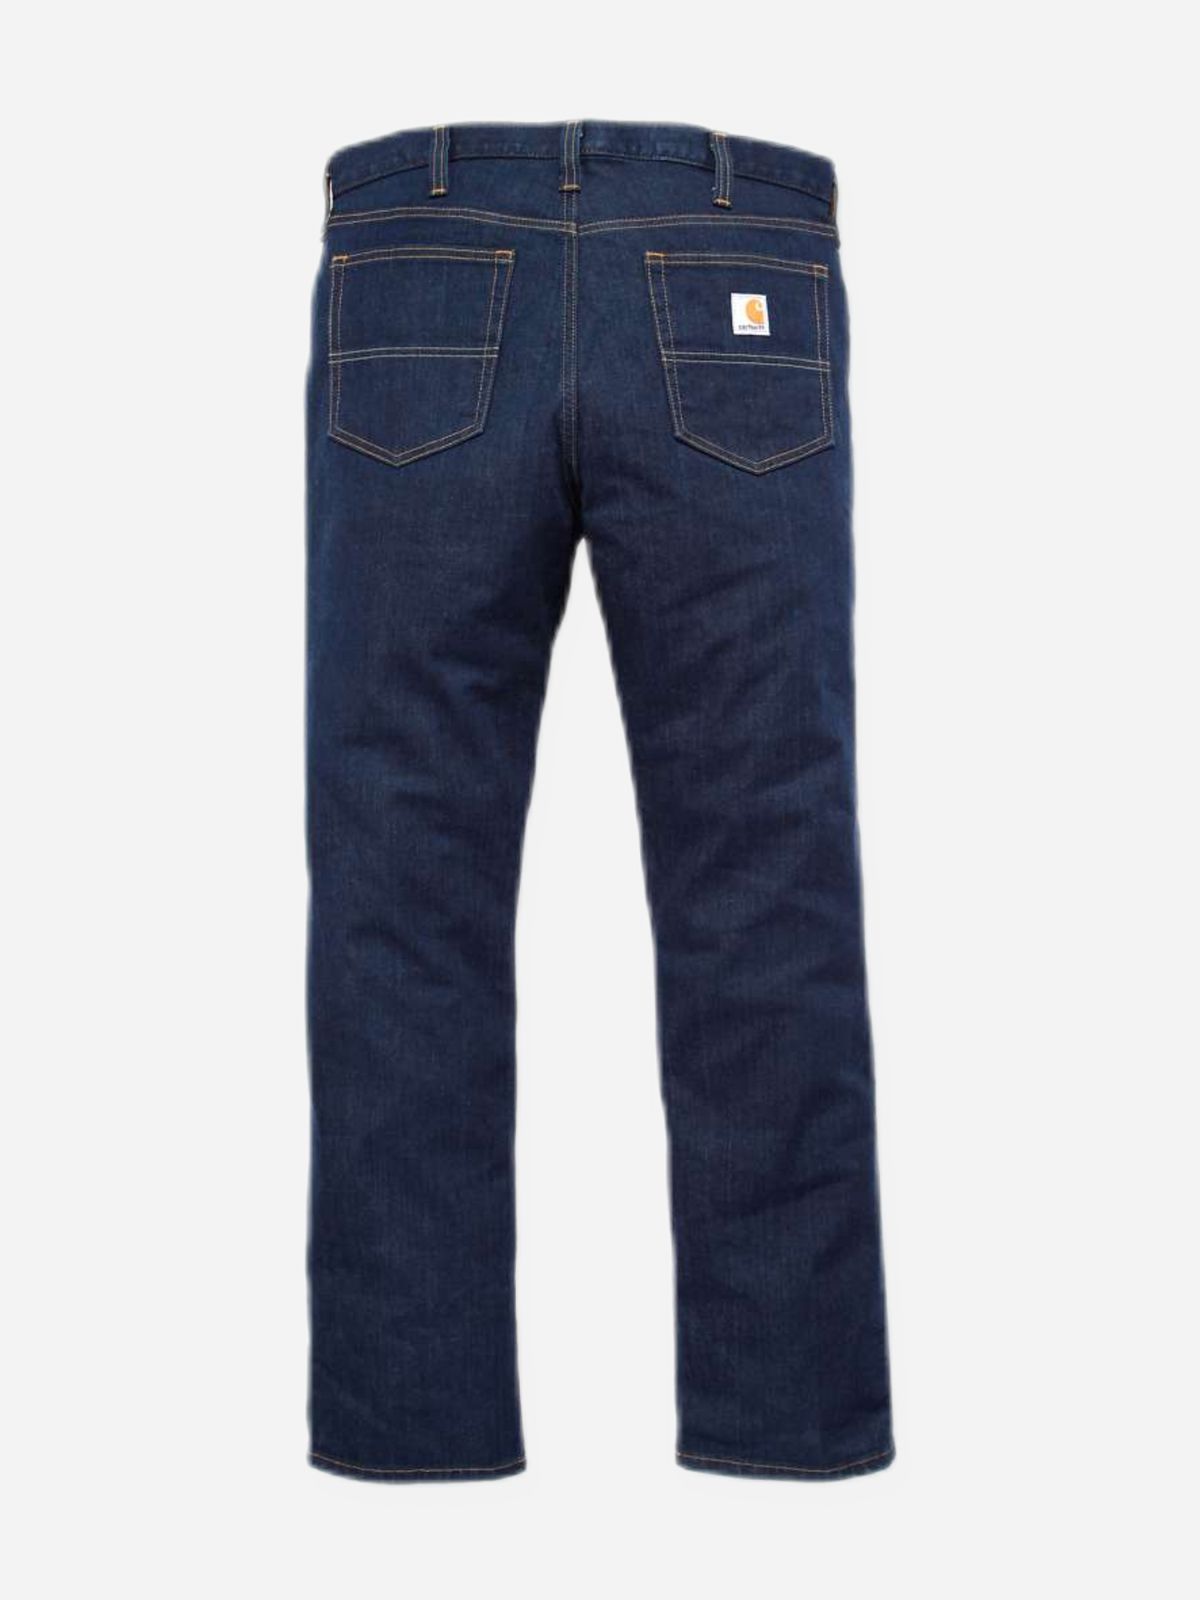  ג'ינס ארוך בגזרה ישרה של CARHARTT